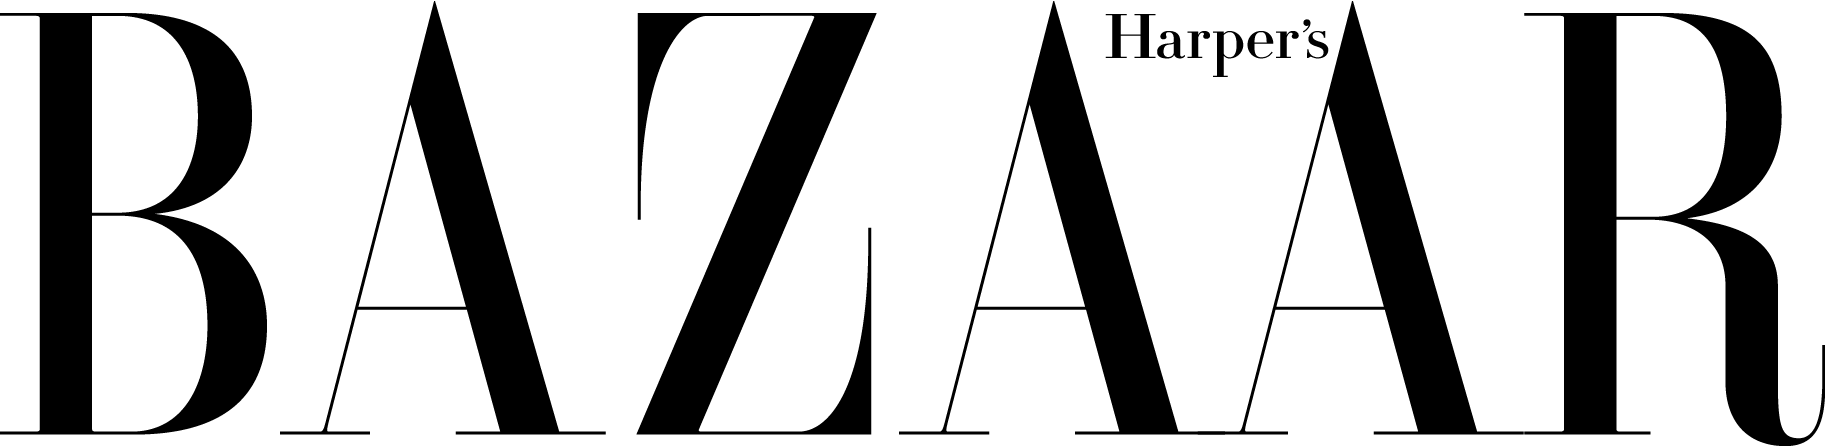 Harper's_Bazaar_Logo-01